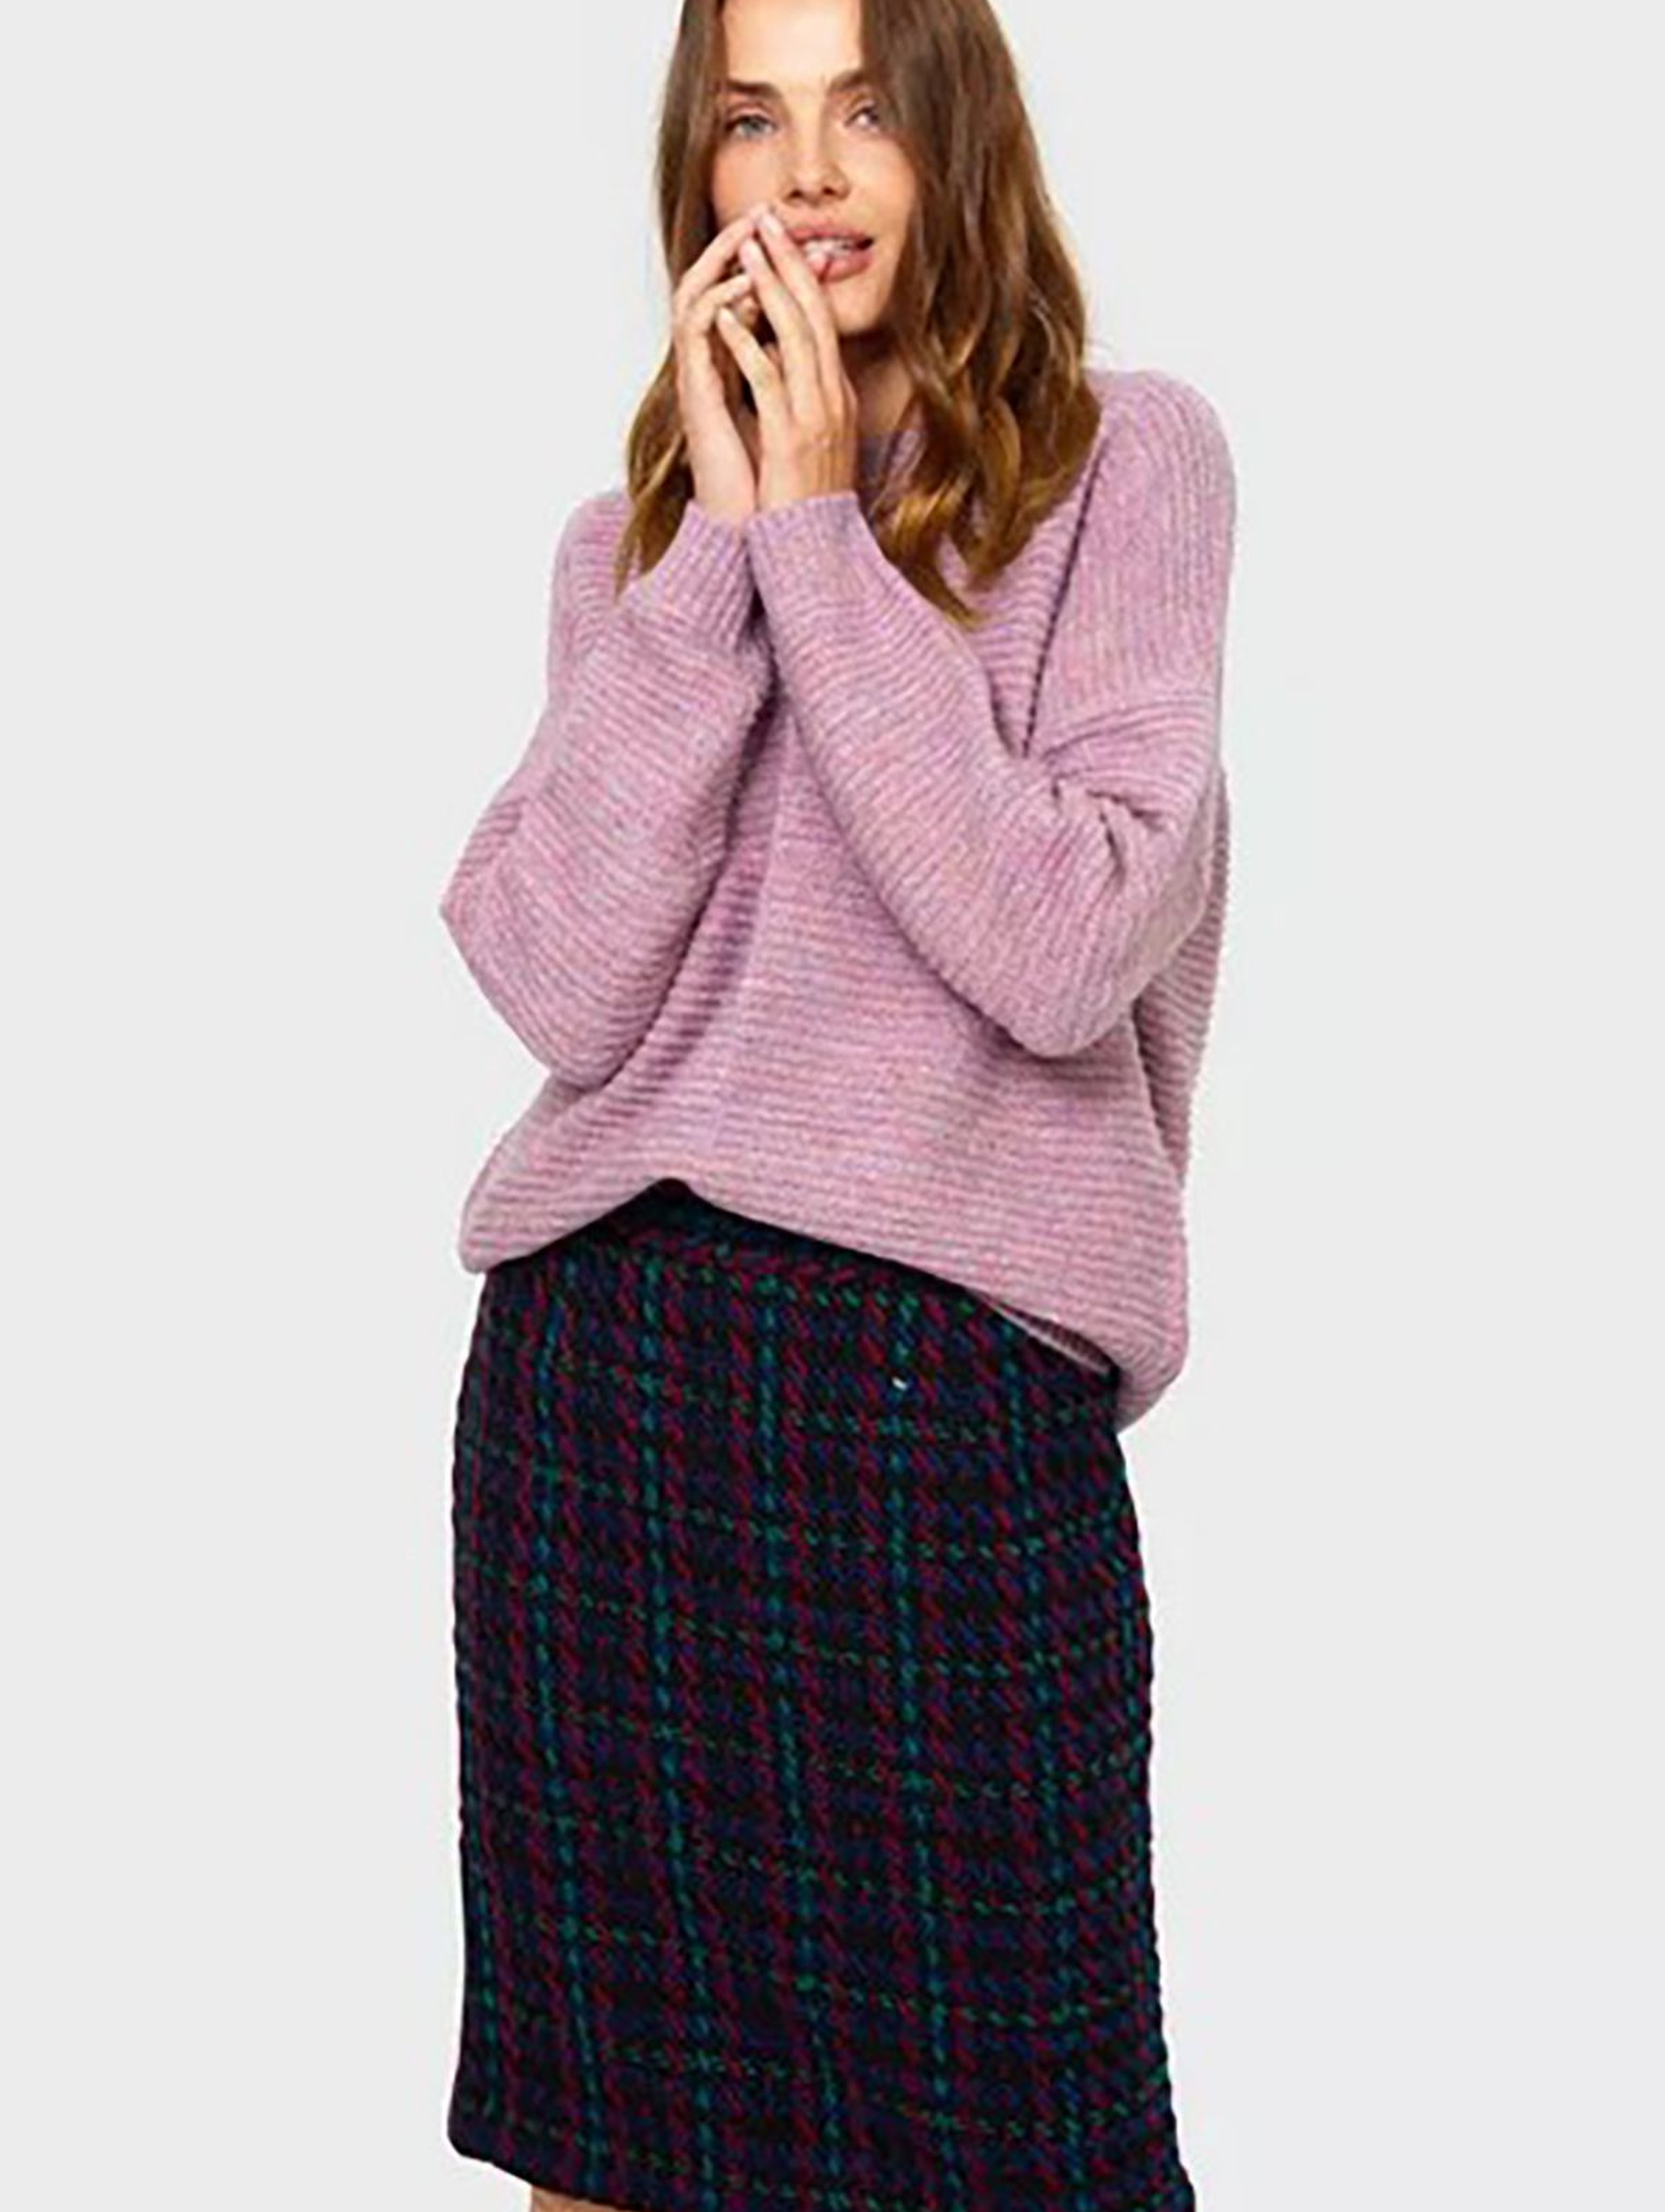 Sweter damski - różowy